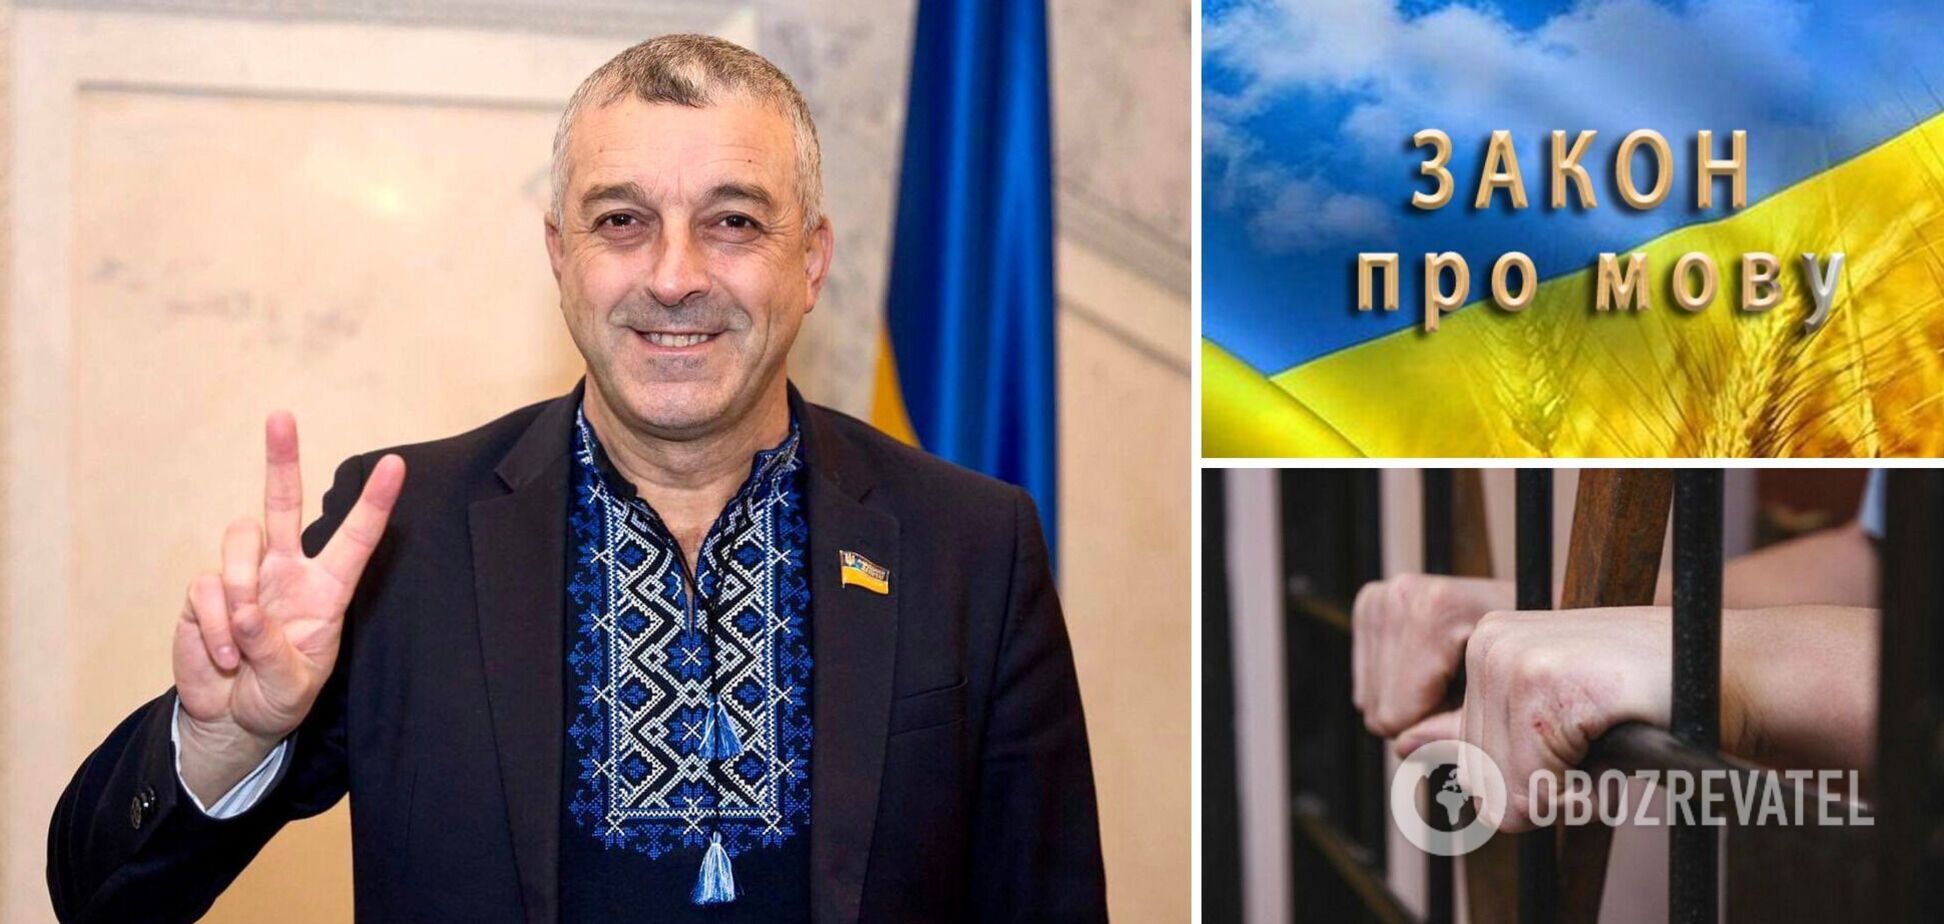 Тюрьма за критику власти и выезд за границу за 'откуп': самые скандальные законопроекты нардепа Мазурашу, которые возмутили Украину